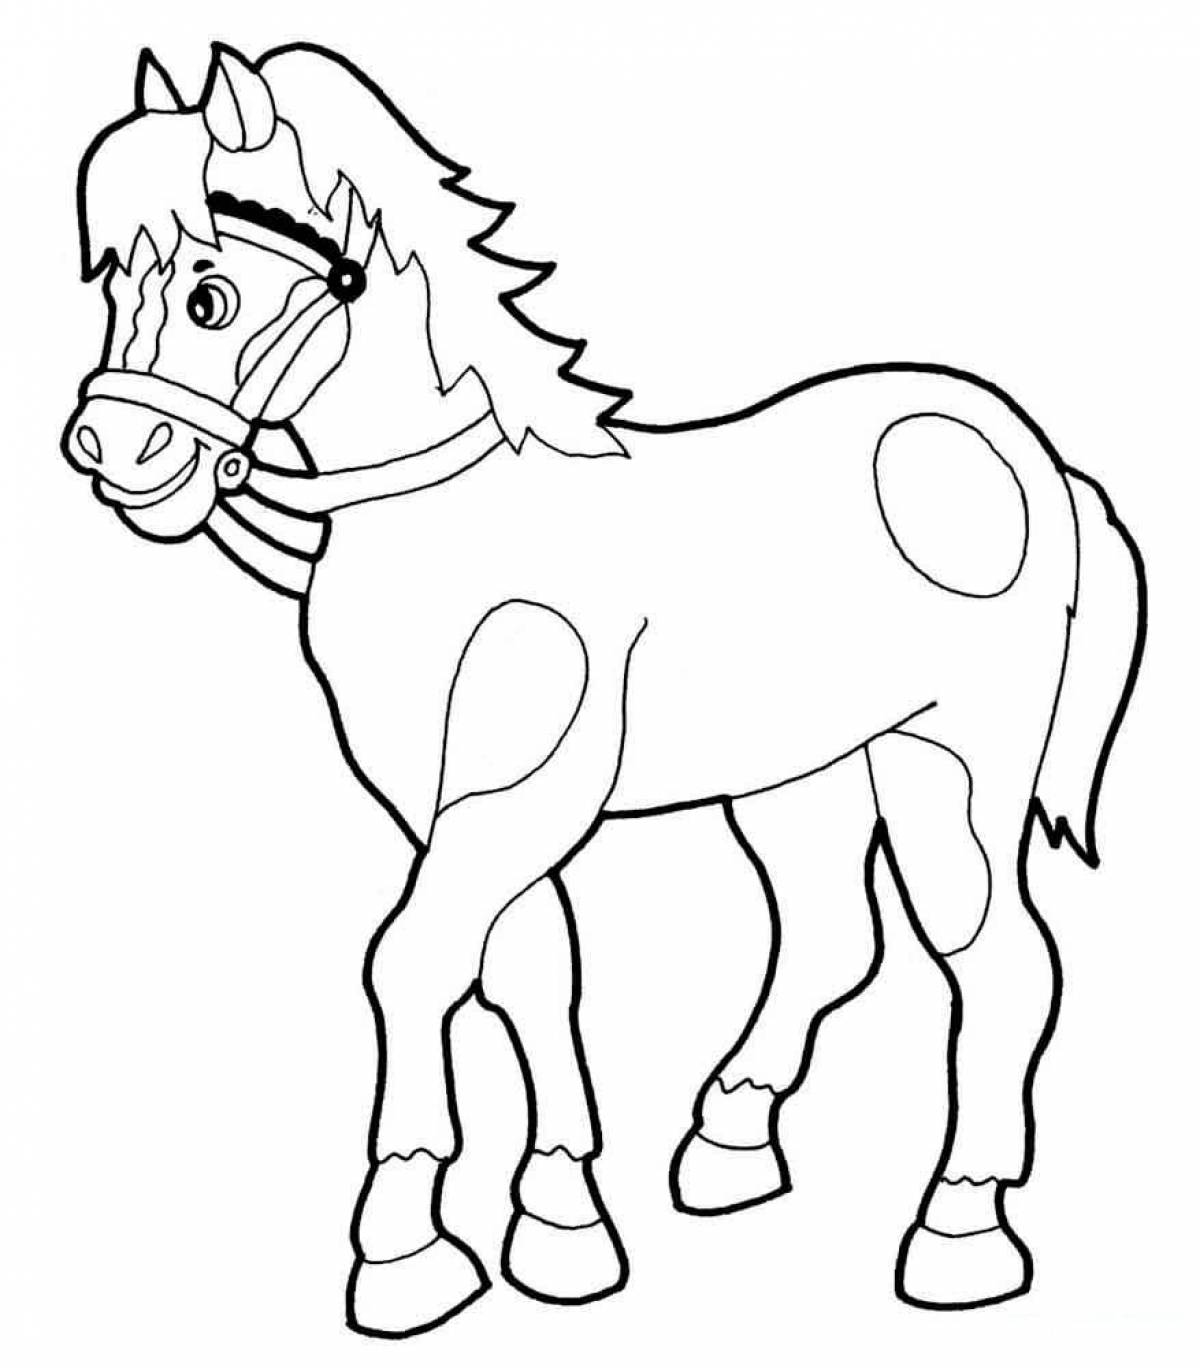 Величественная серебряная пятнистая раскраска лошадь